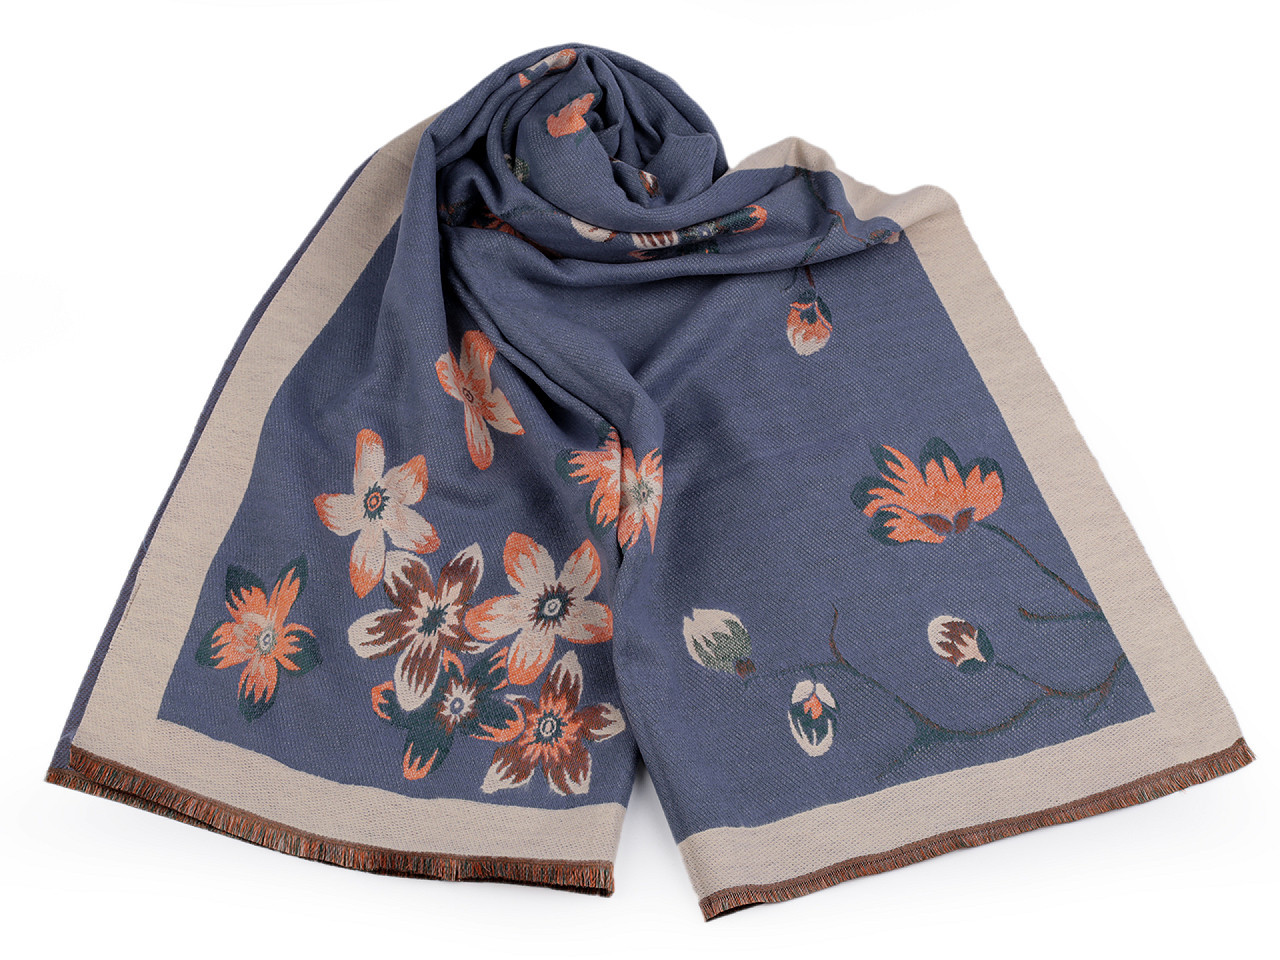 Šátek / šála typu kašmír s třásněmi, květy 65x190 cm, barva 8 modrá jemná béžová světlá